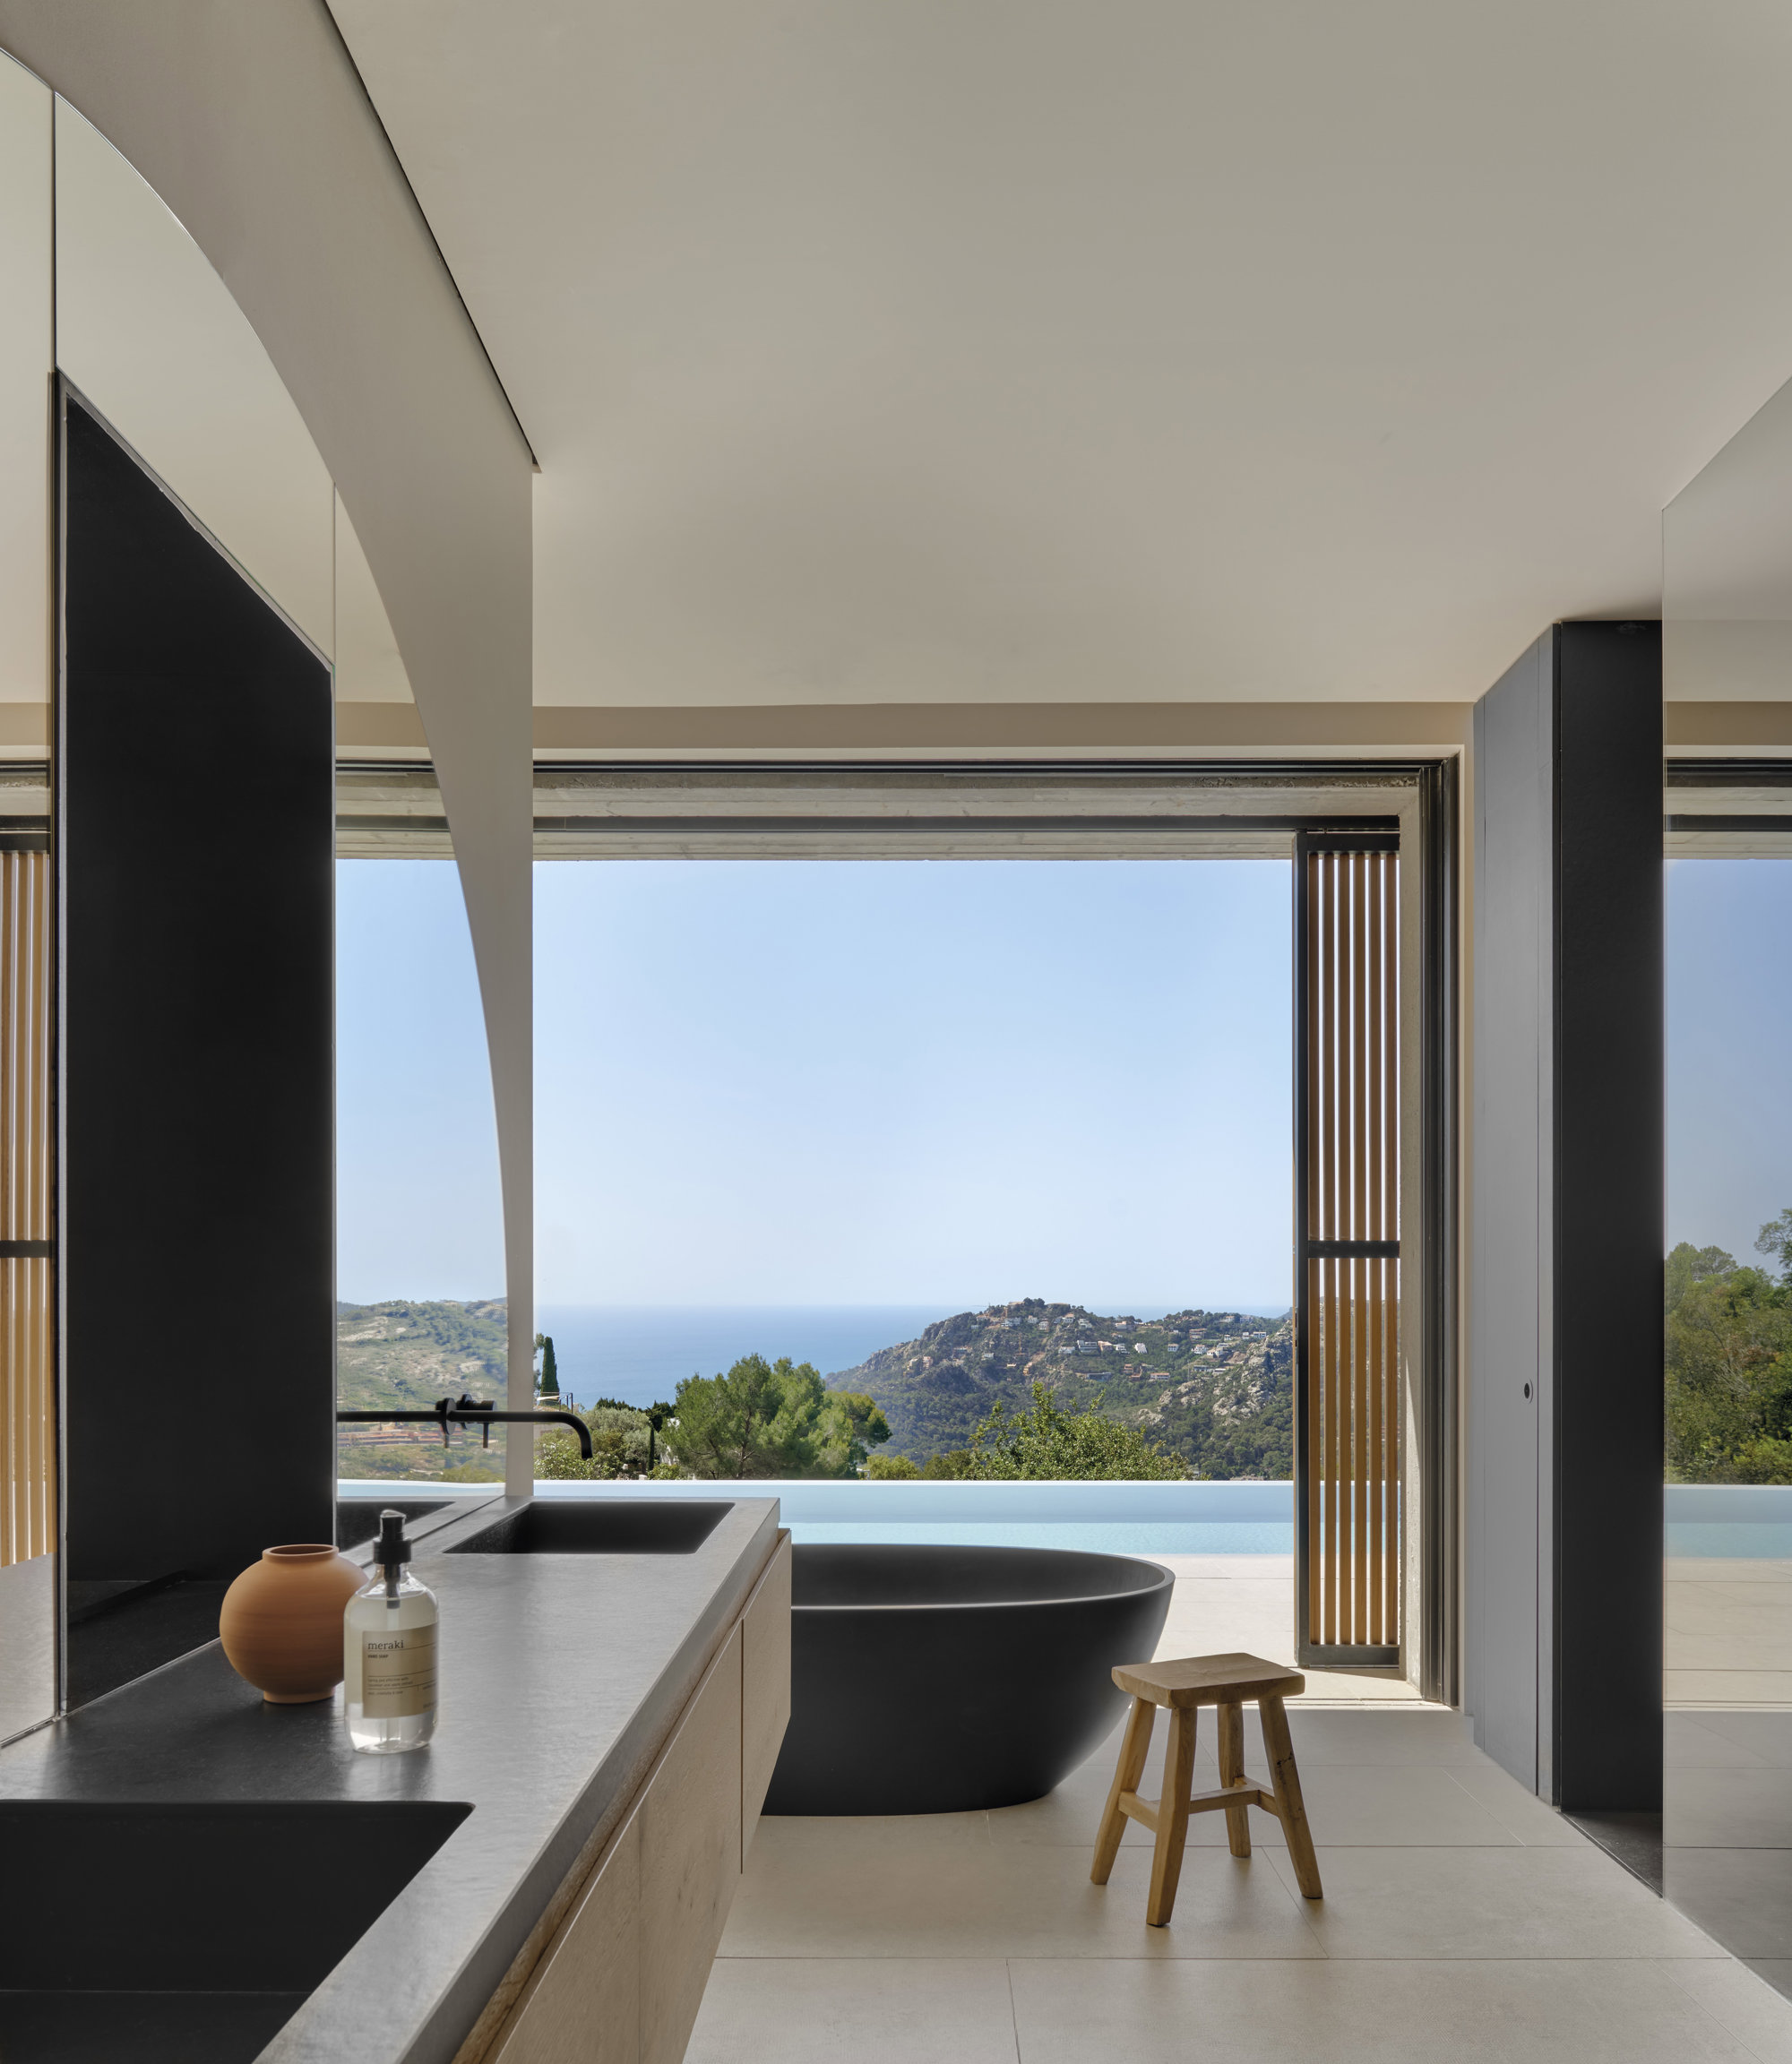 El baño moderno de la suite bañera negra